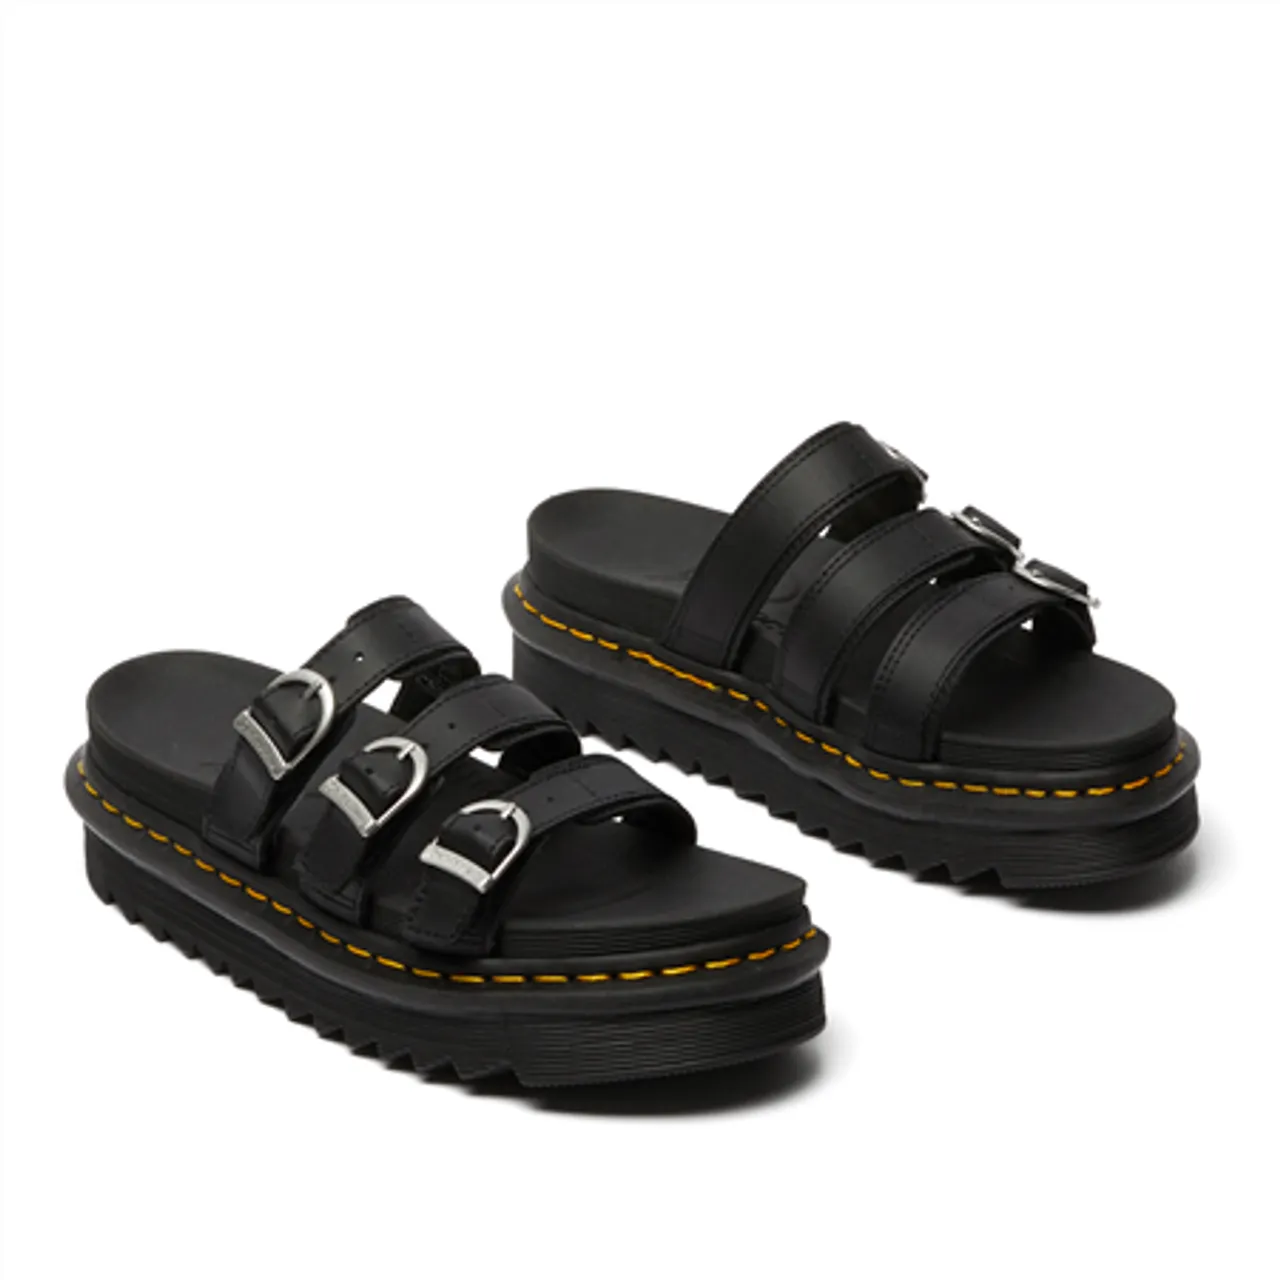 Dr Martens Blaire Slide Leather Sandals - Black - UK 4 (EU 37)